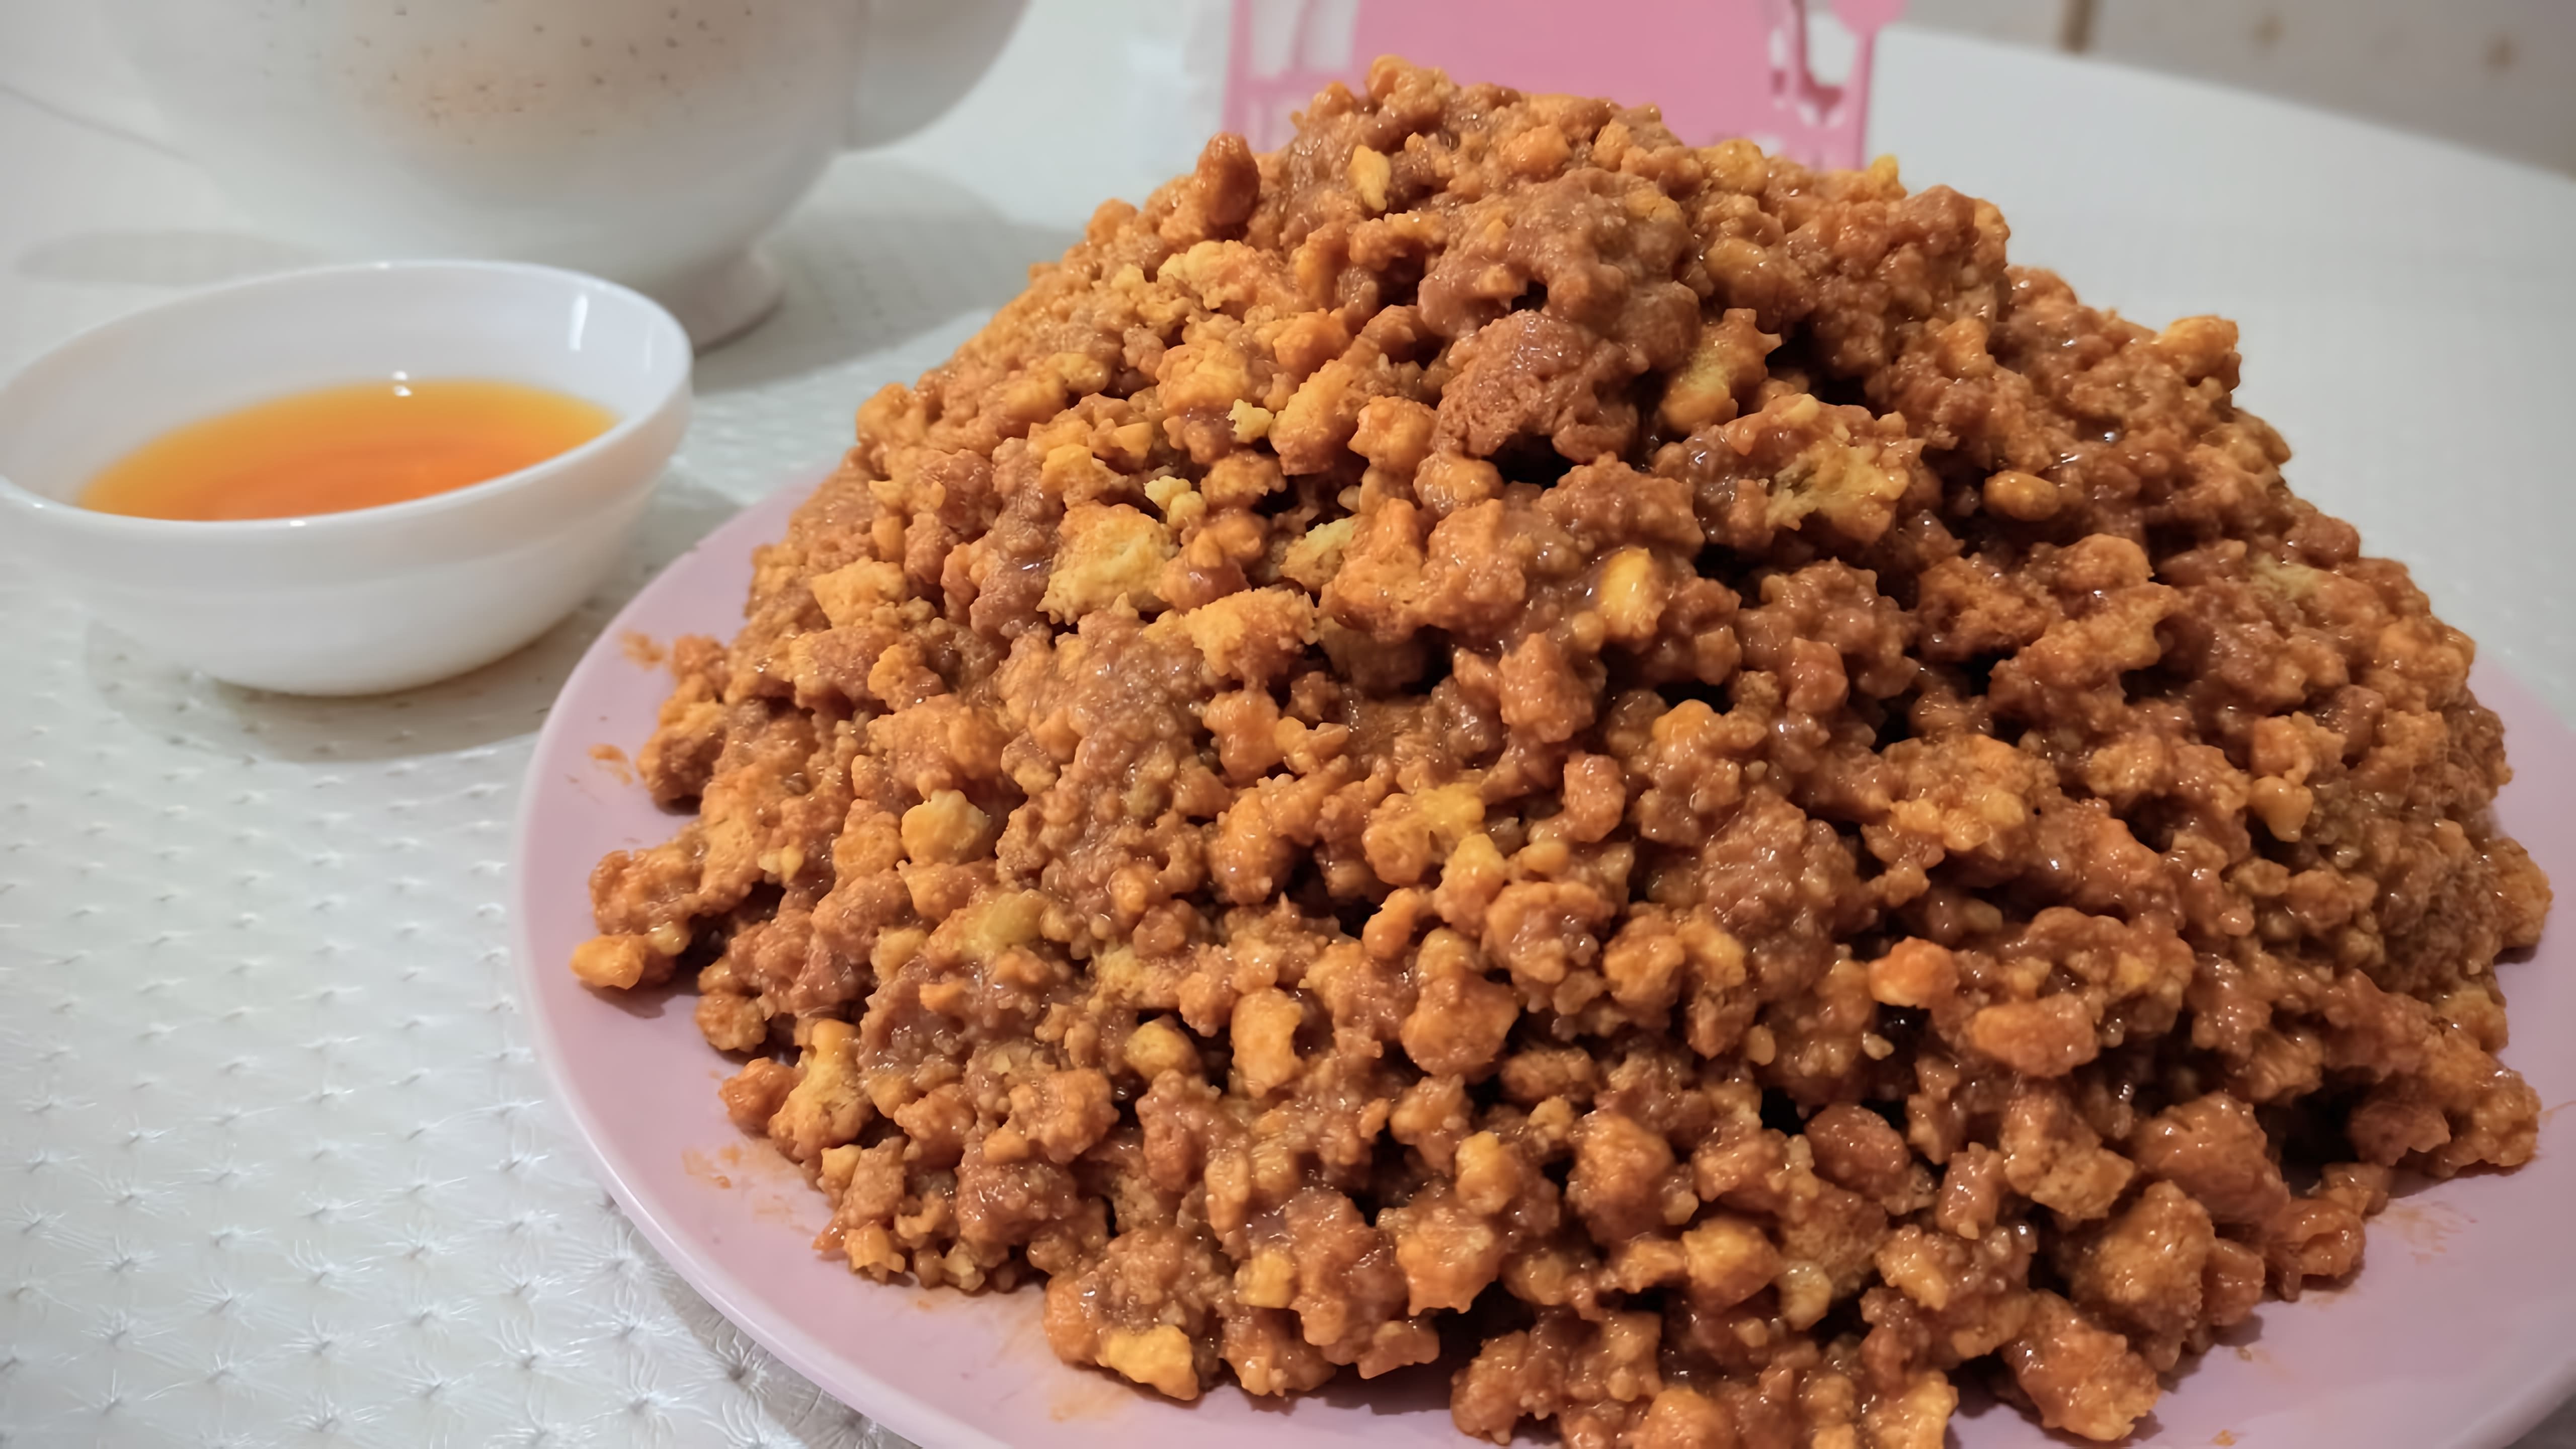 В этом видео демонстрируется рецепт приготовления песочного торта "Муравейник"